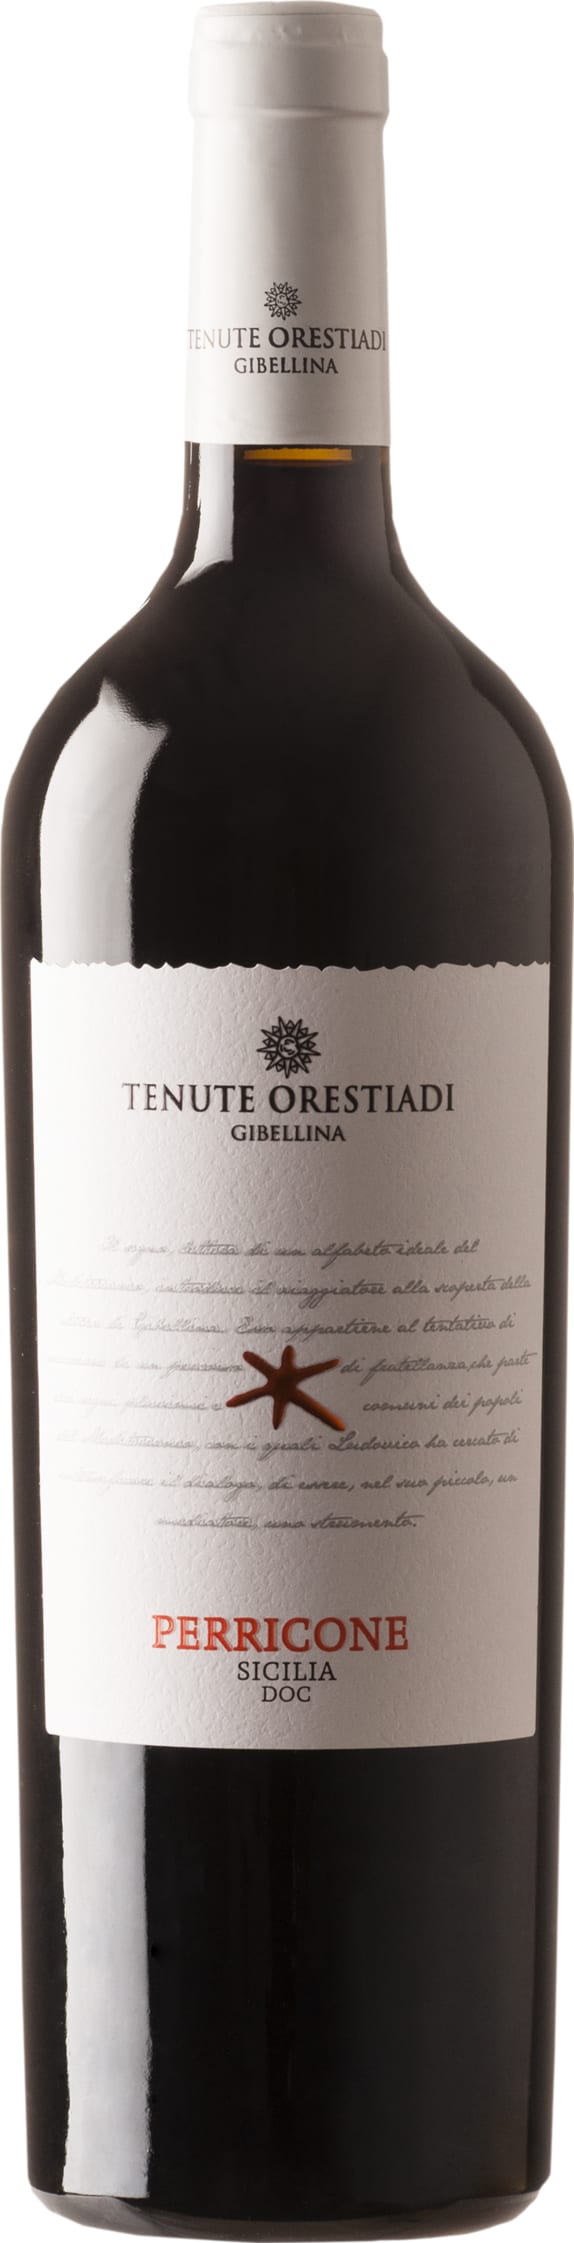 Tenute Orestiadi - Tenute Orestiadi Perricone 2021 6x75cl - Just Wines 